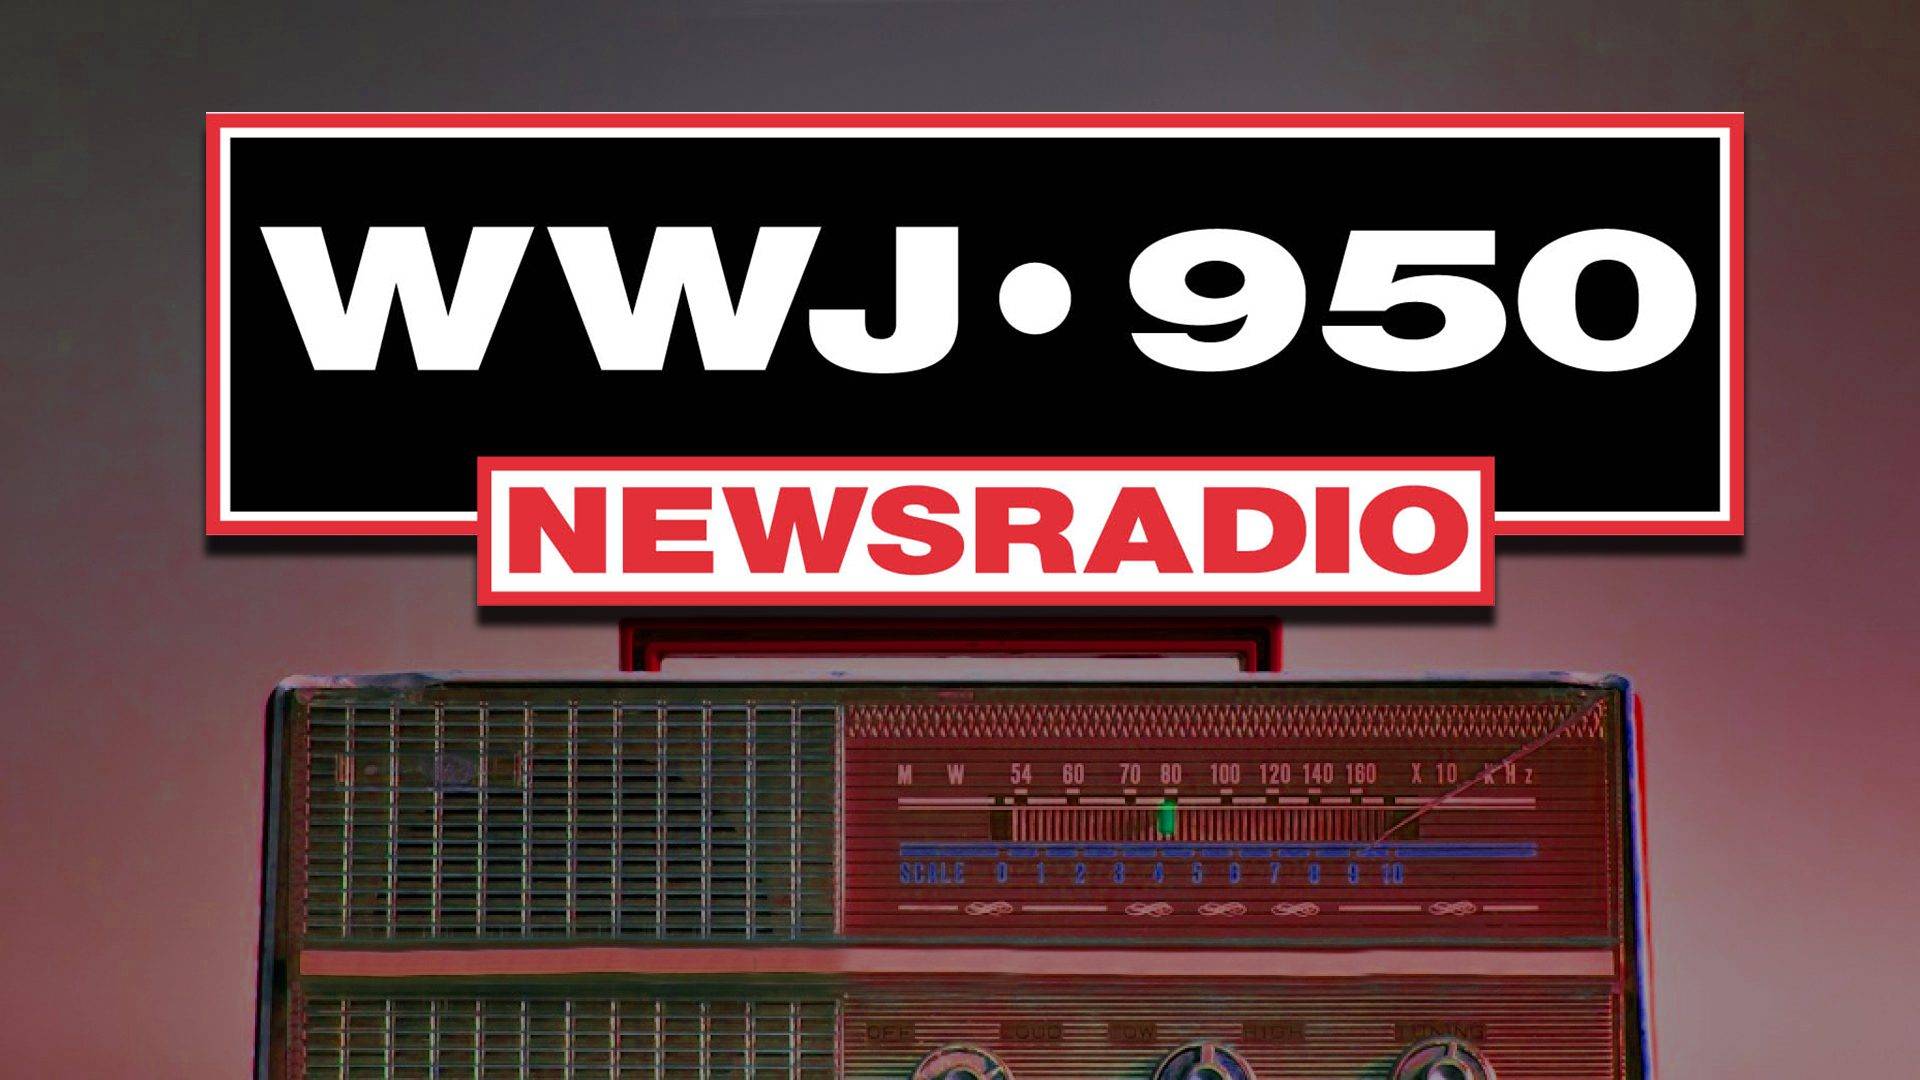 WWJ 950 News Radio